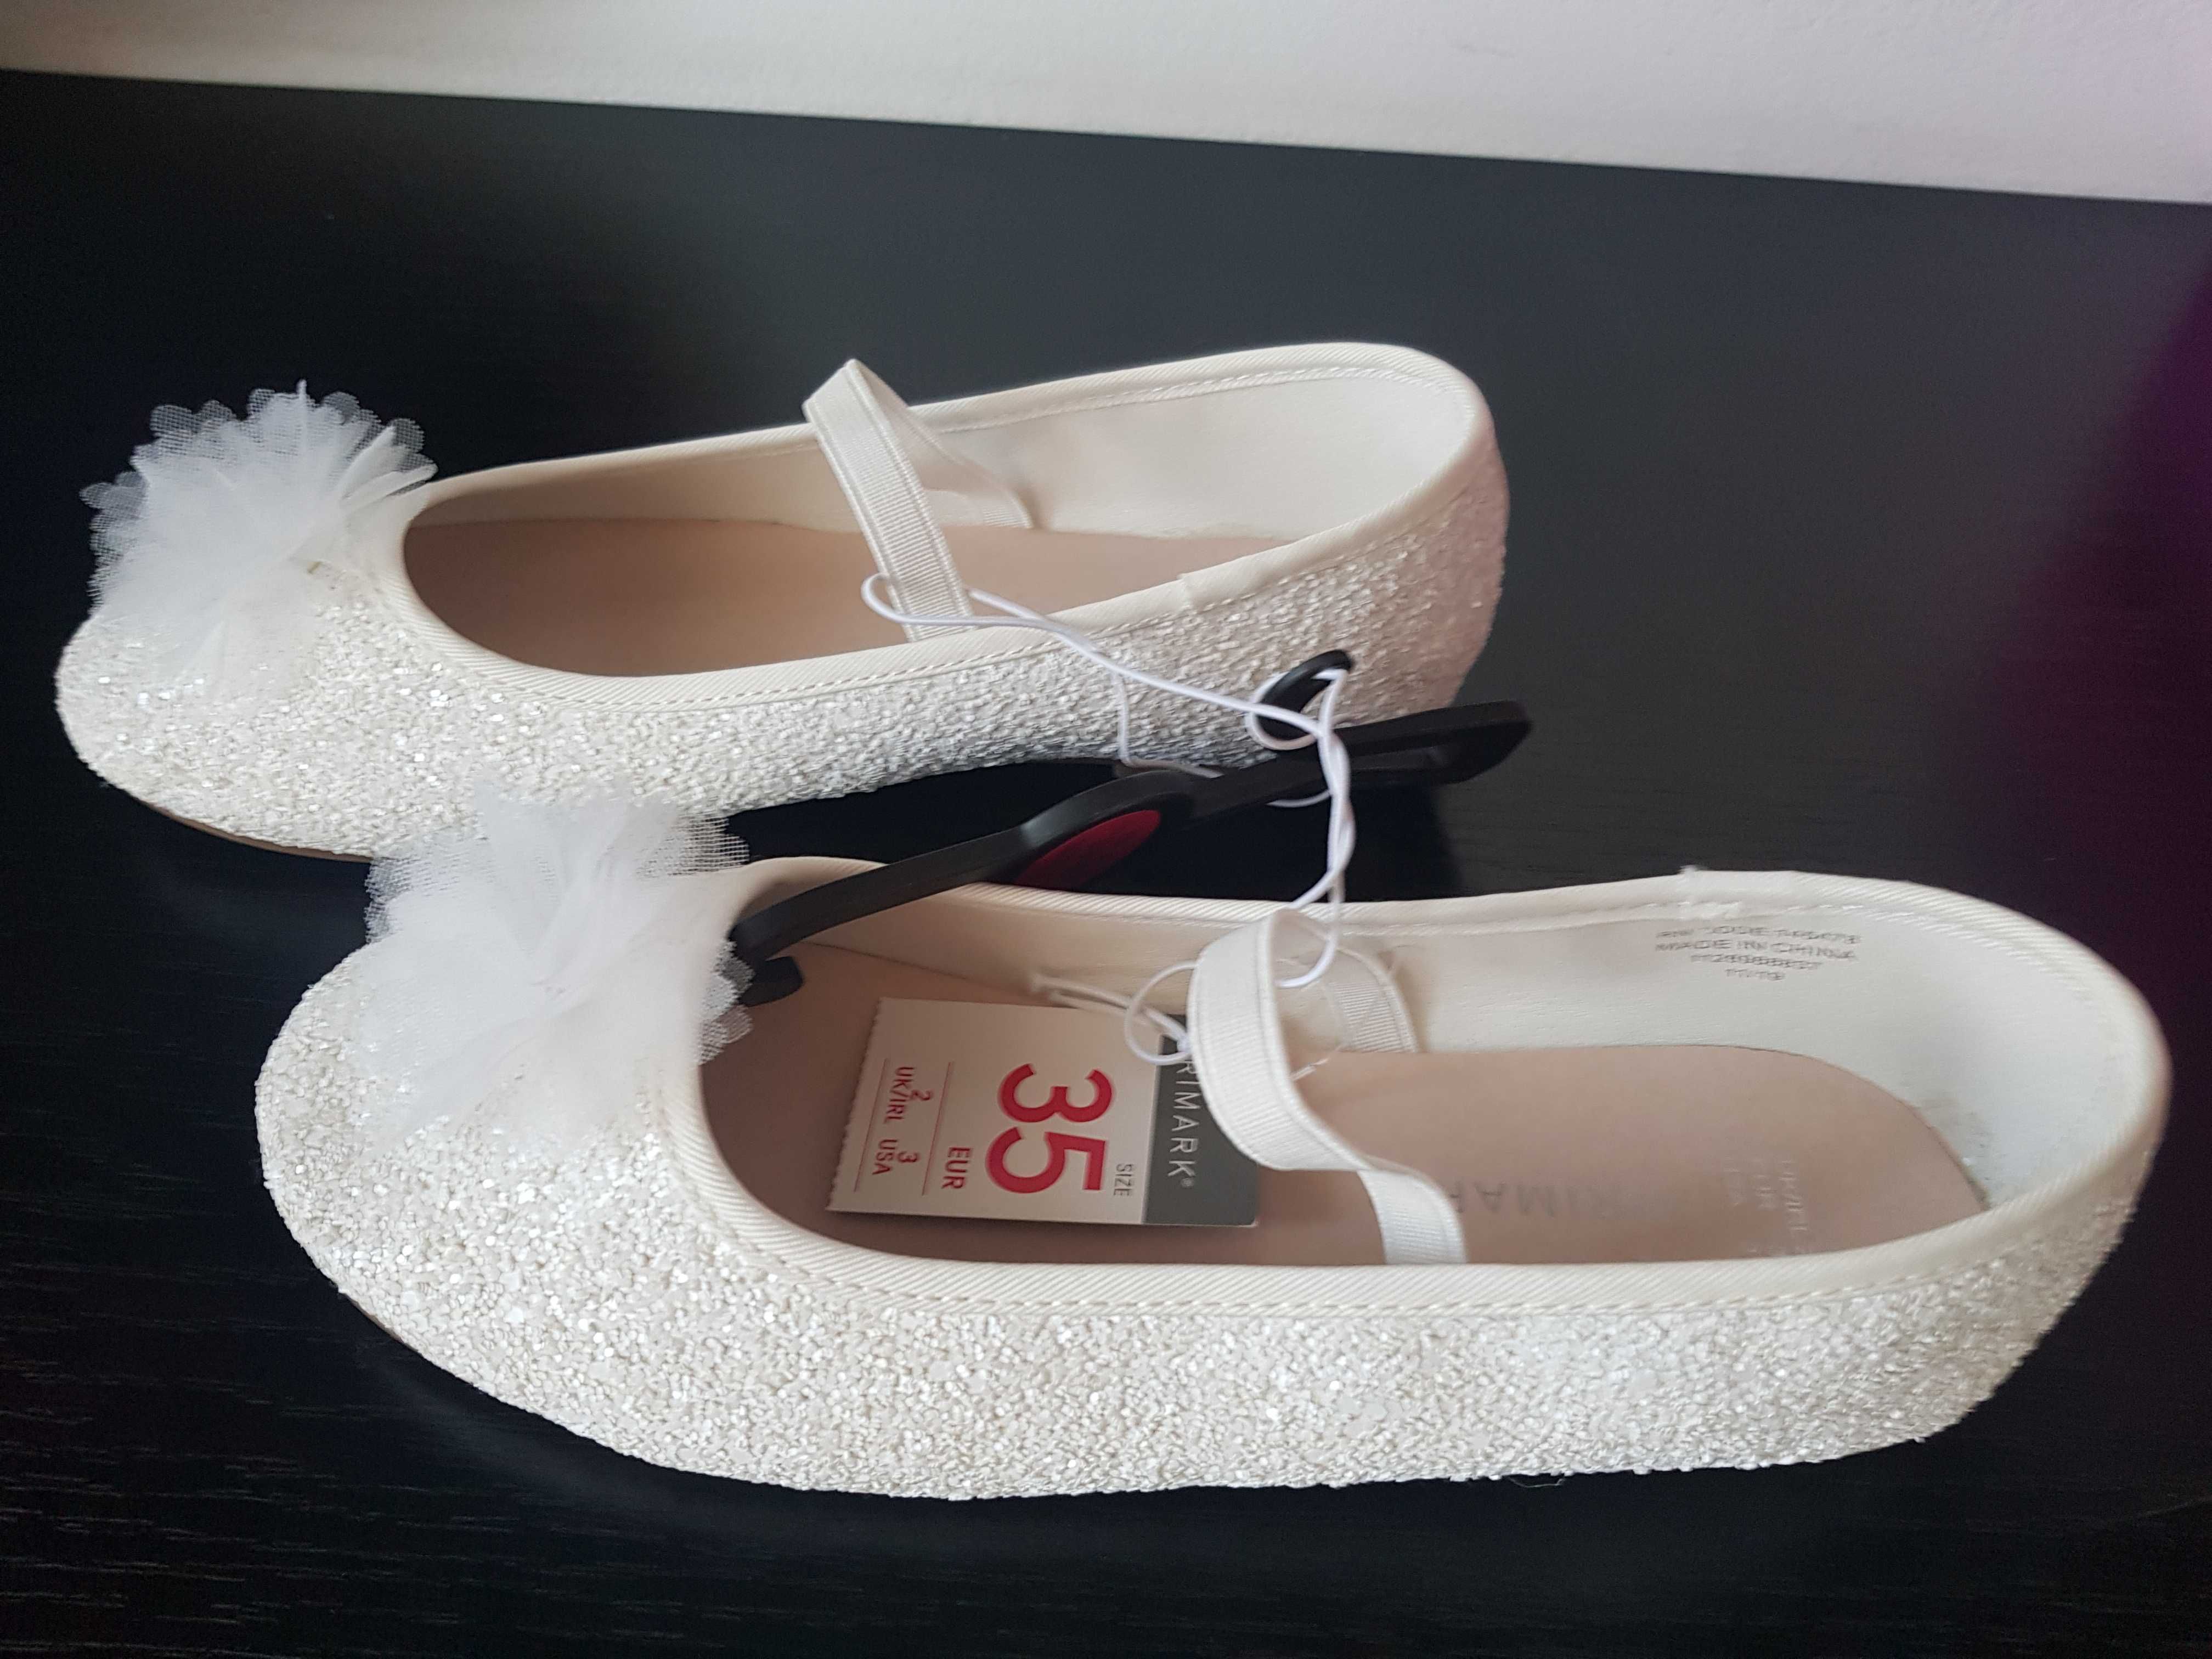 Pantofi NOI albi cu floricica alba 35 (22cm)